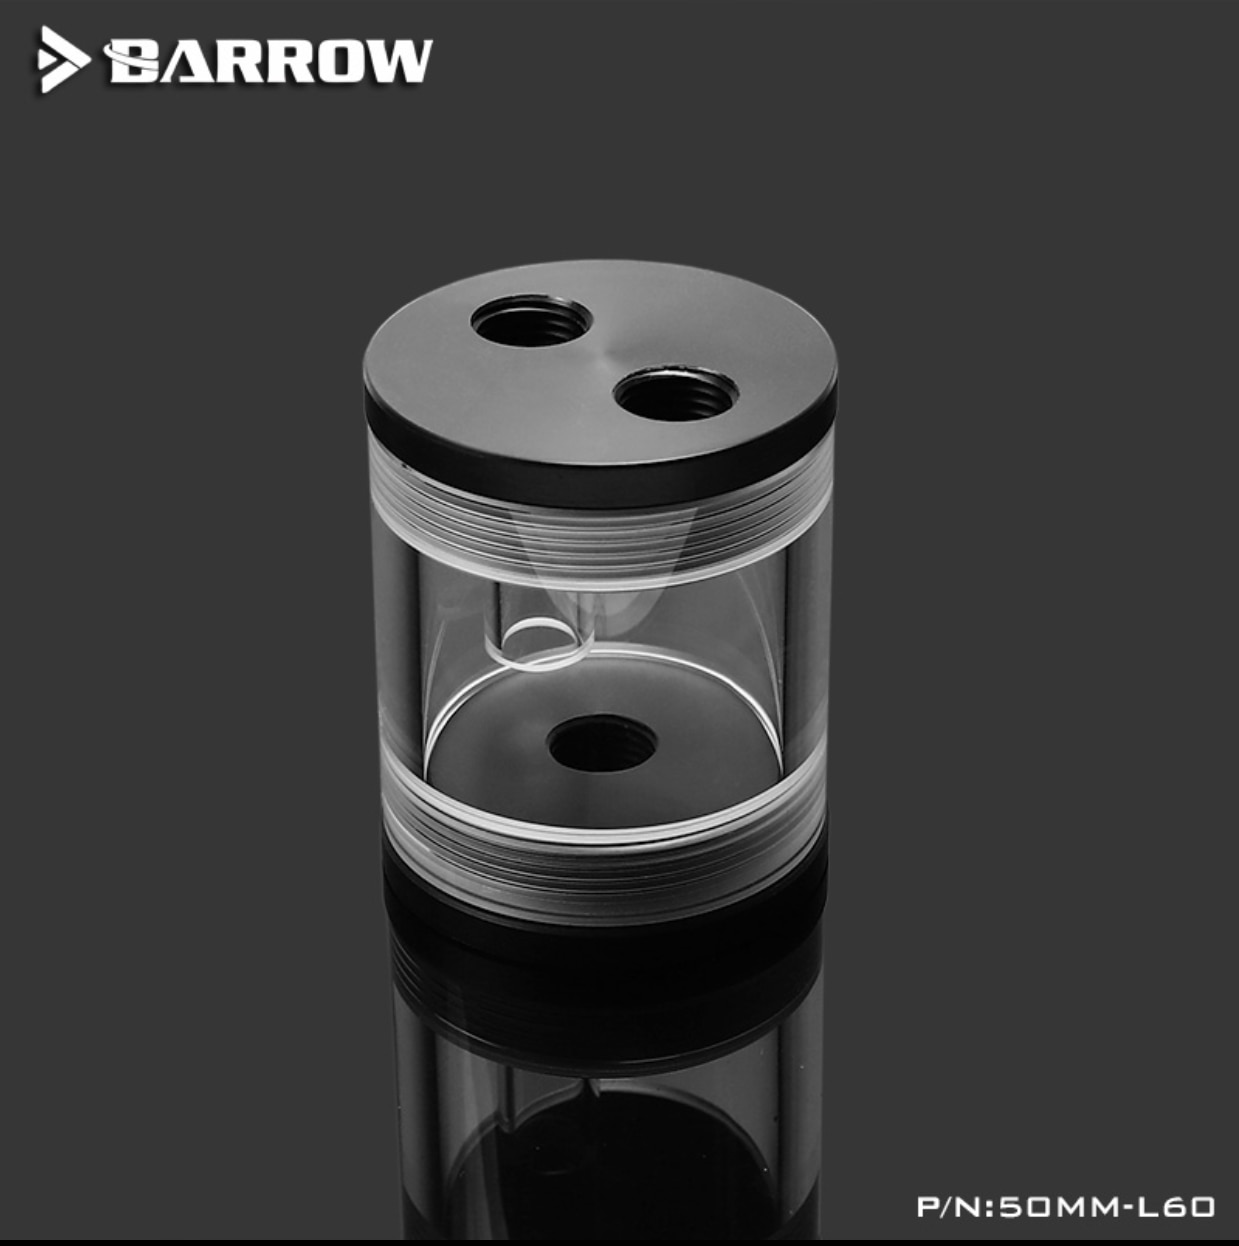 Barrow 50MM-L60, 50 Mm Diameter Cilindrische Waterkoeling Waterkoeling Water Tank